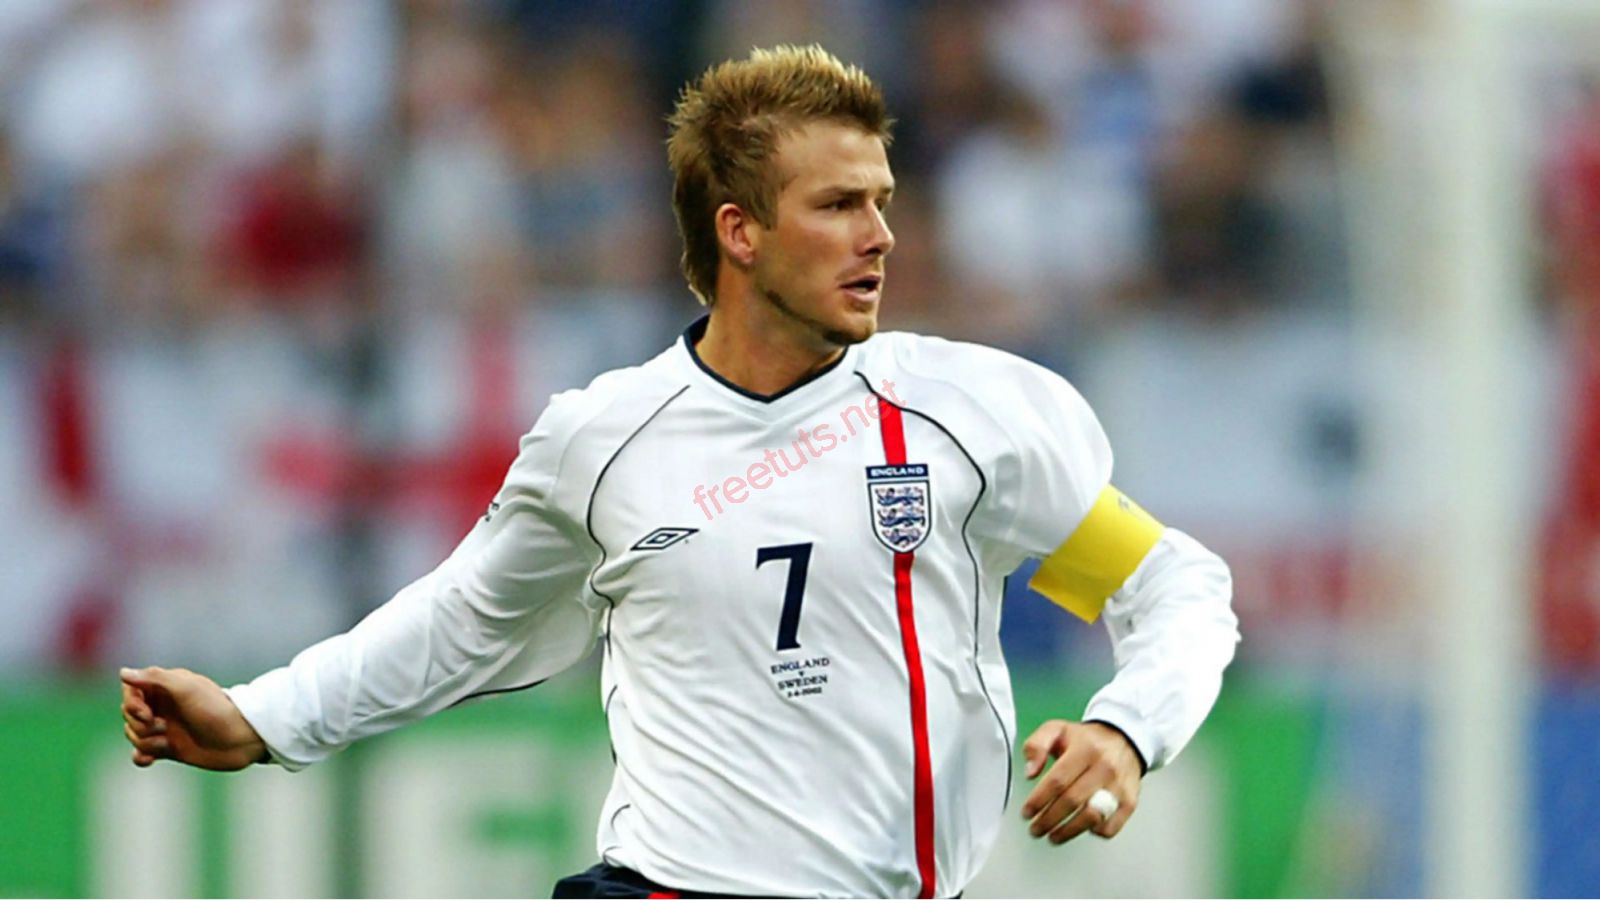 Top 5 cầu thủ khoác áo nhiều nhất đội tuyển Anh mọi thời đại